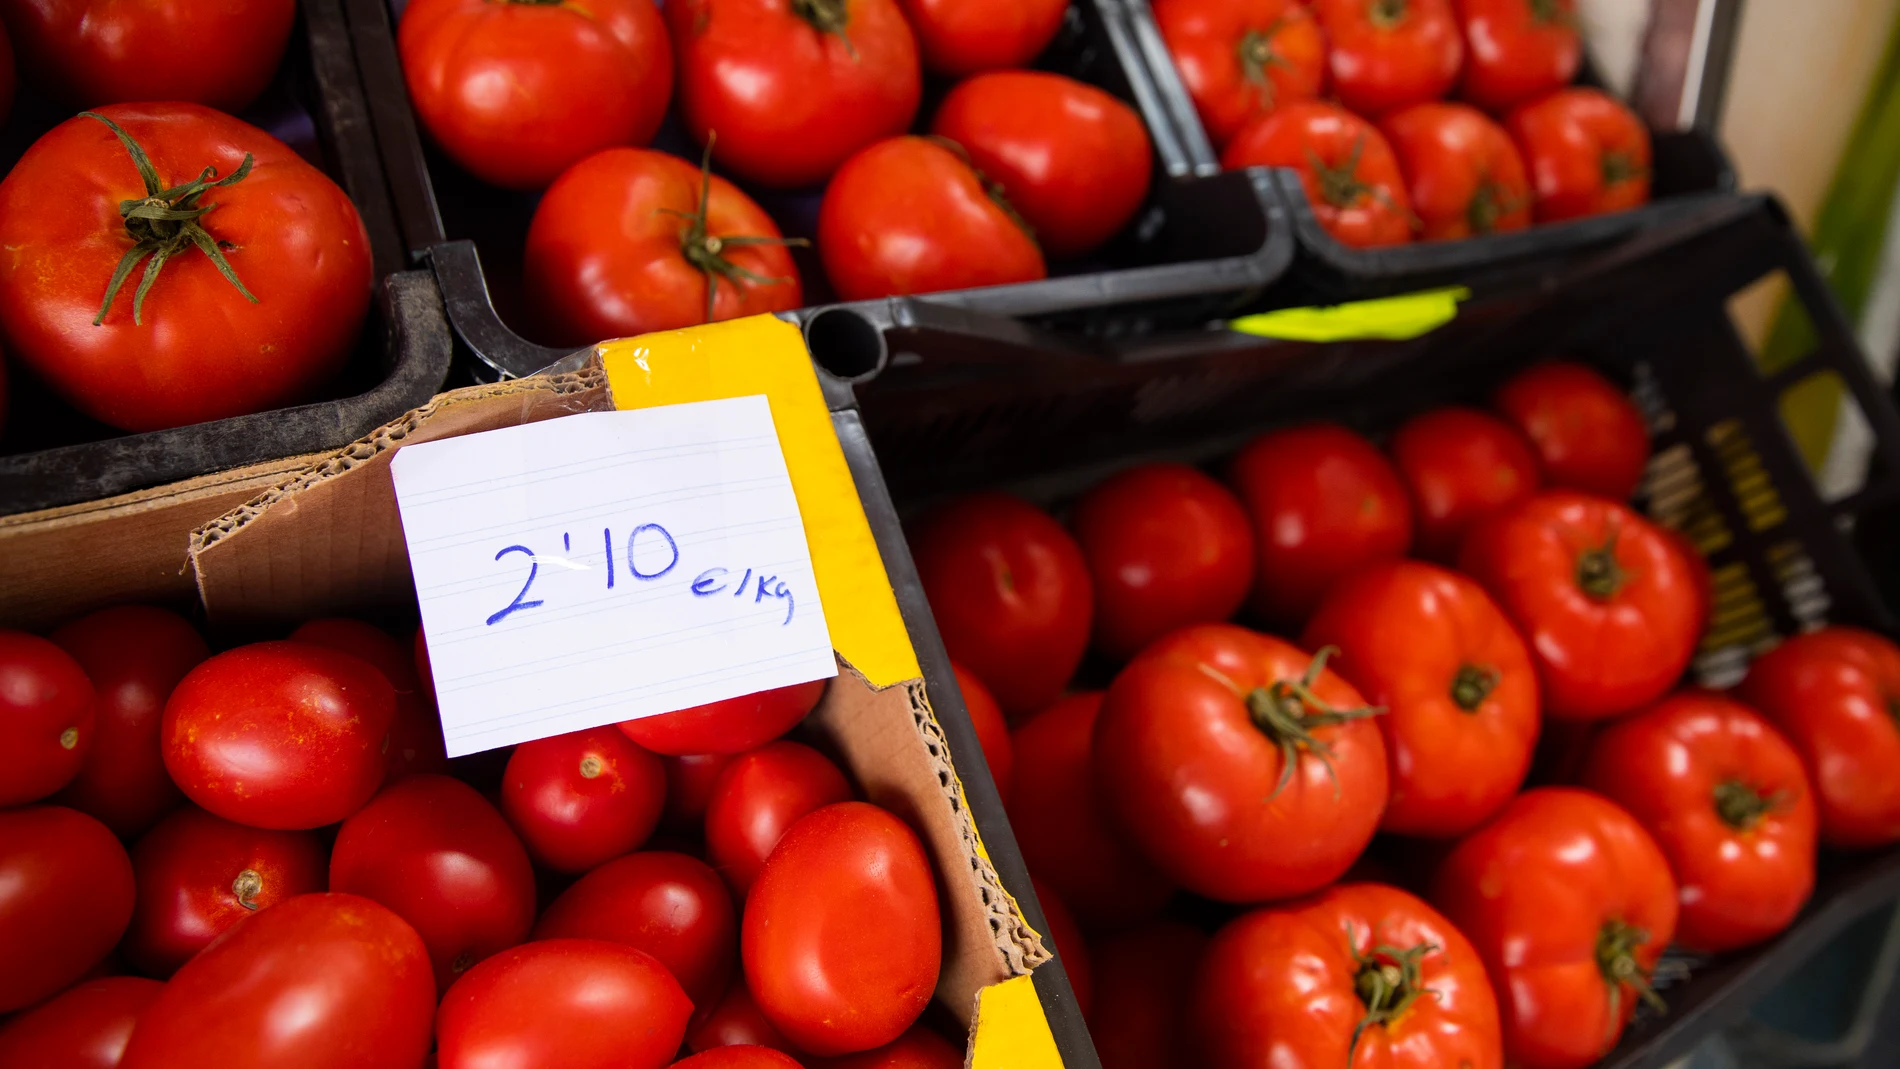 Tomates en un puesto de frutas y verduras de un mercado de abastos | Fuente: María José López / Europa Press